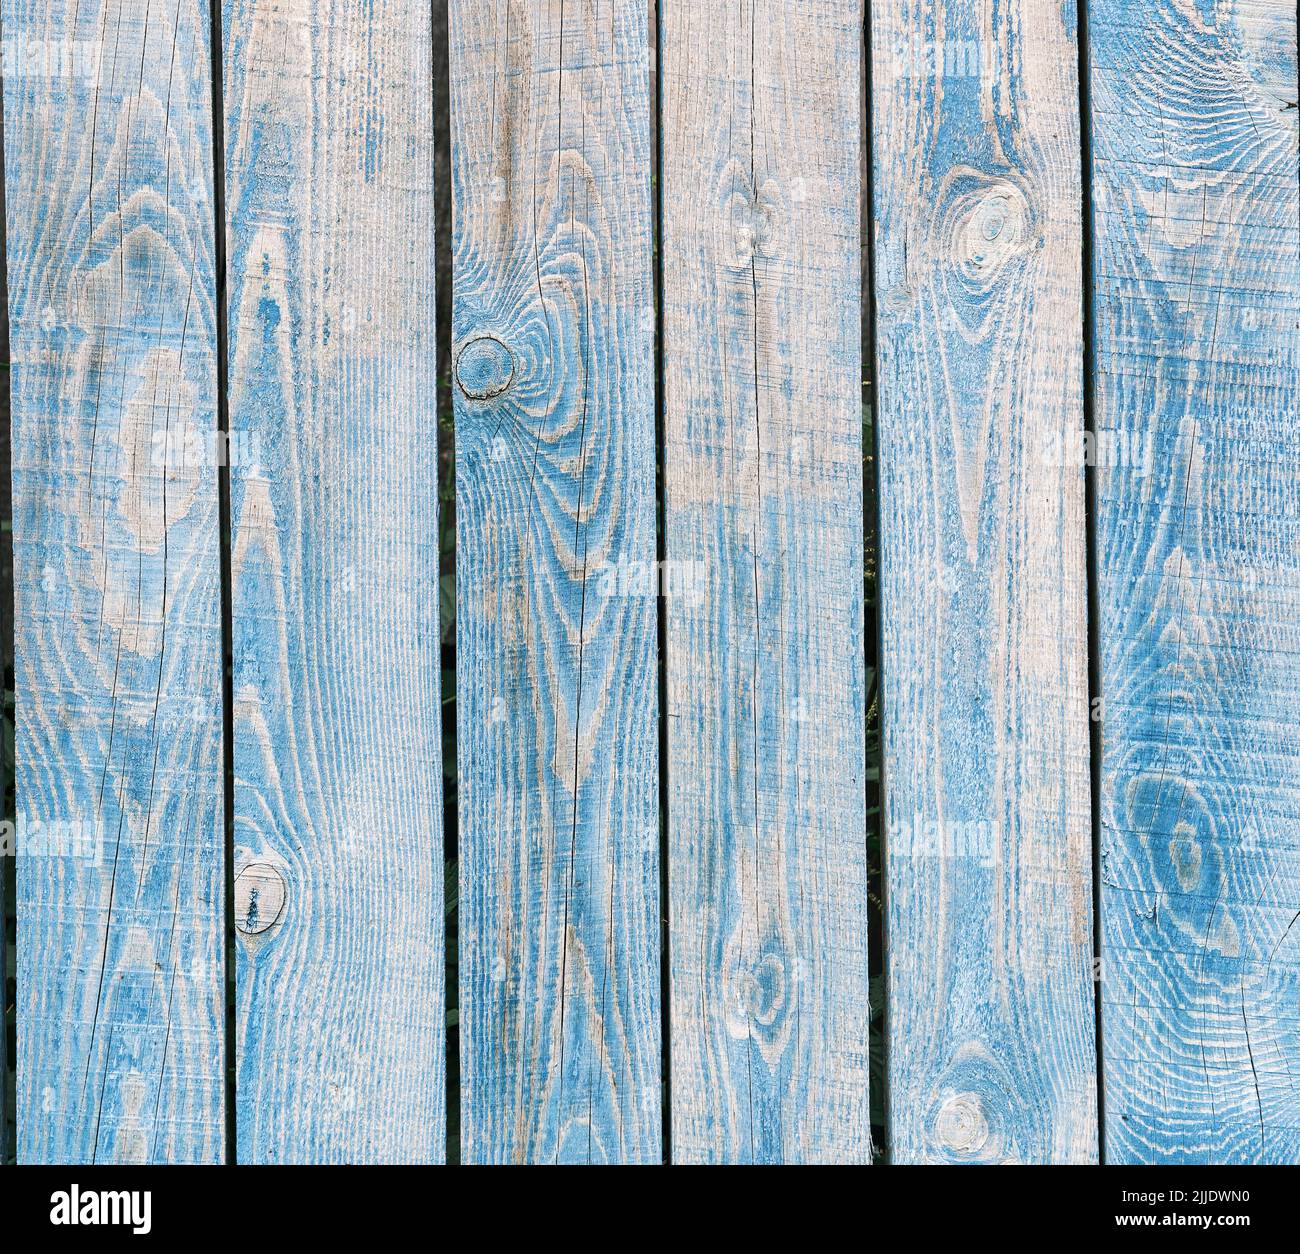 Le bleu de bois a décoloré les planches verticales d'une vieille clôture comme un arrière-plan rural abstrait. Banque D'Images